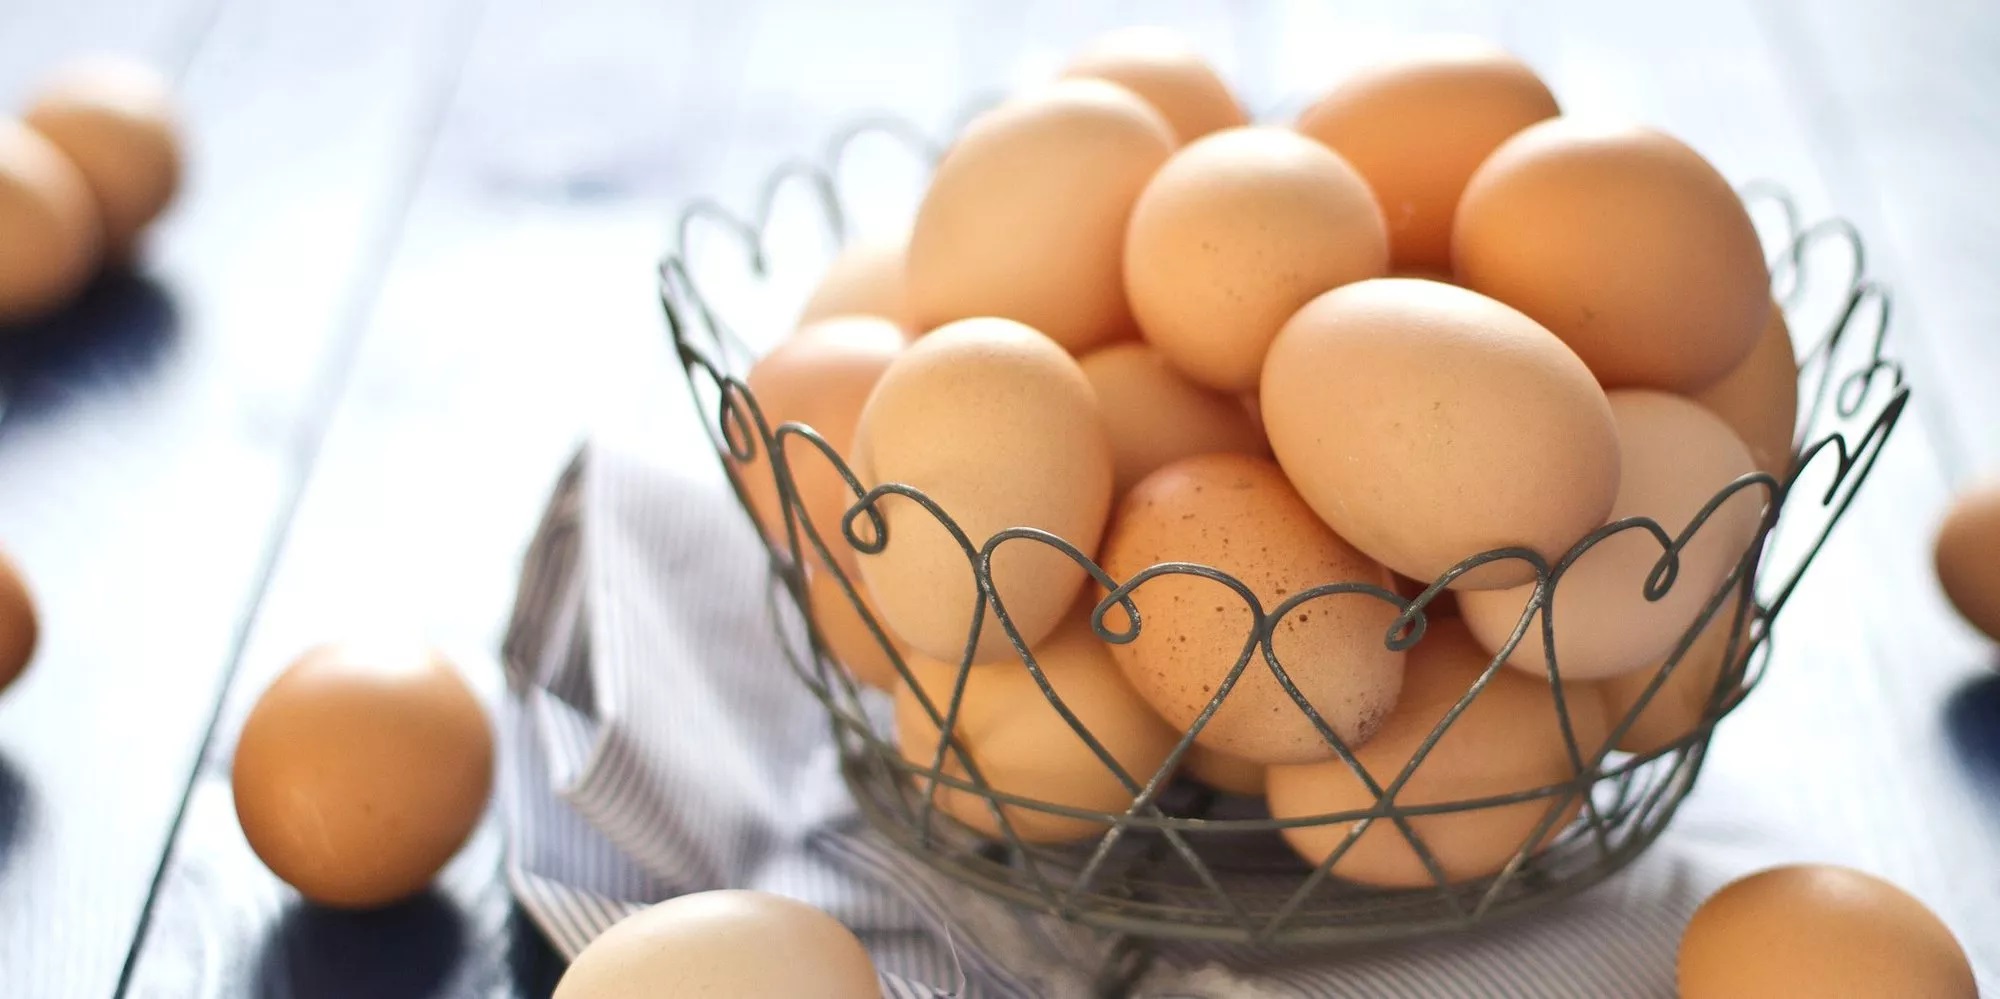 Ăn 1 quả trứng mỗi ngày chống được 2 kiểu tai biến đáng sợ nhất - Ảnh 2